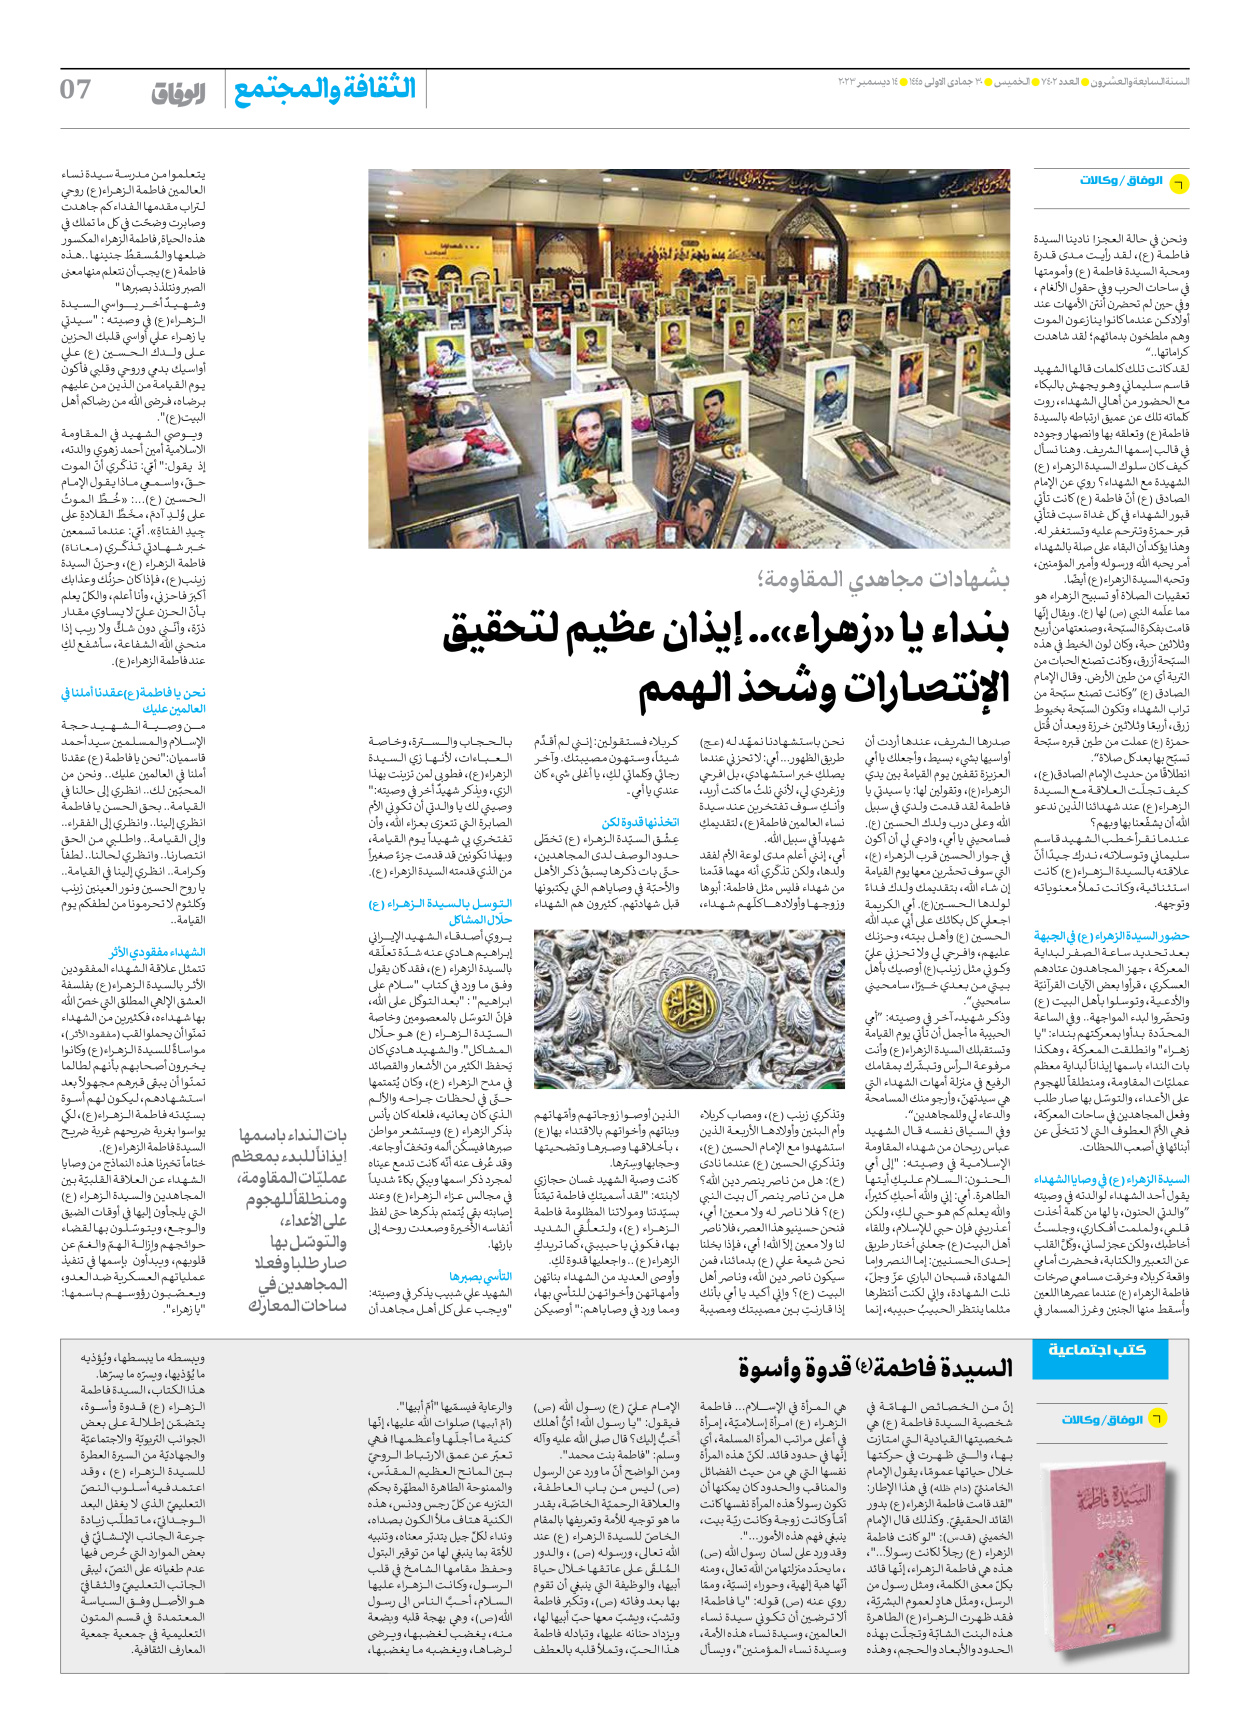 صحیفة ایران الدولیة الوفاق - العدد سبعة آلاف وأربعمائة واثنان - ١٤ ديسمبر ٢٠٢٣ - الصفحة ۷